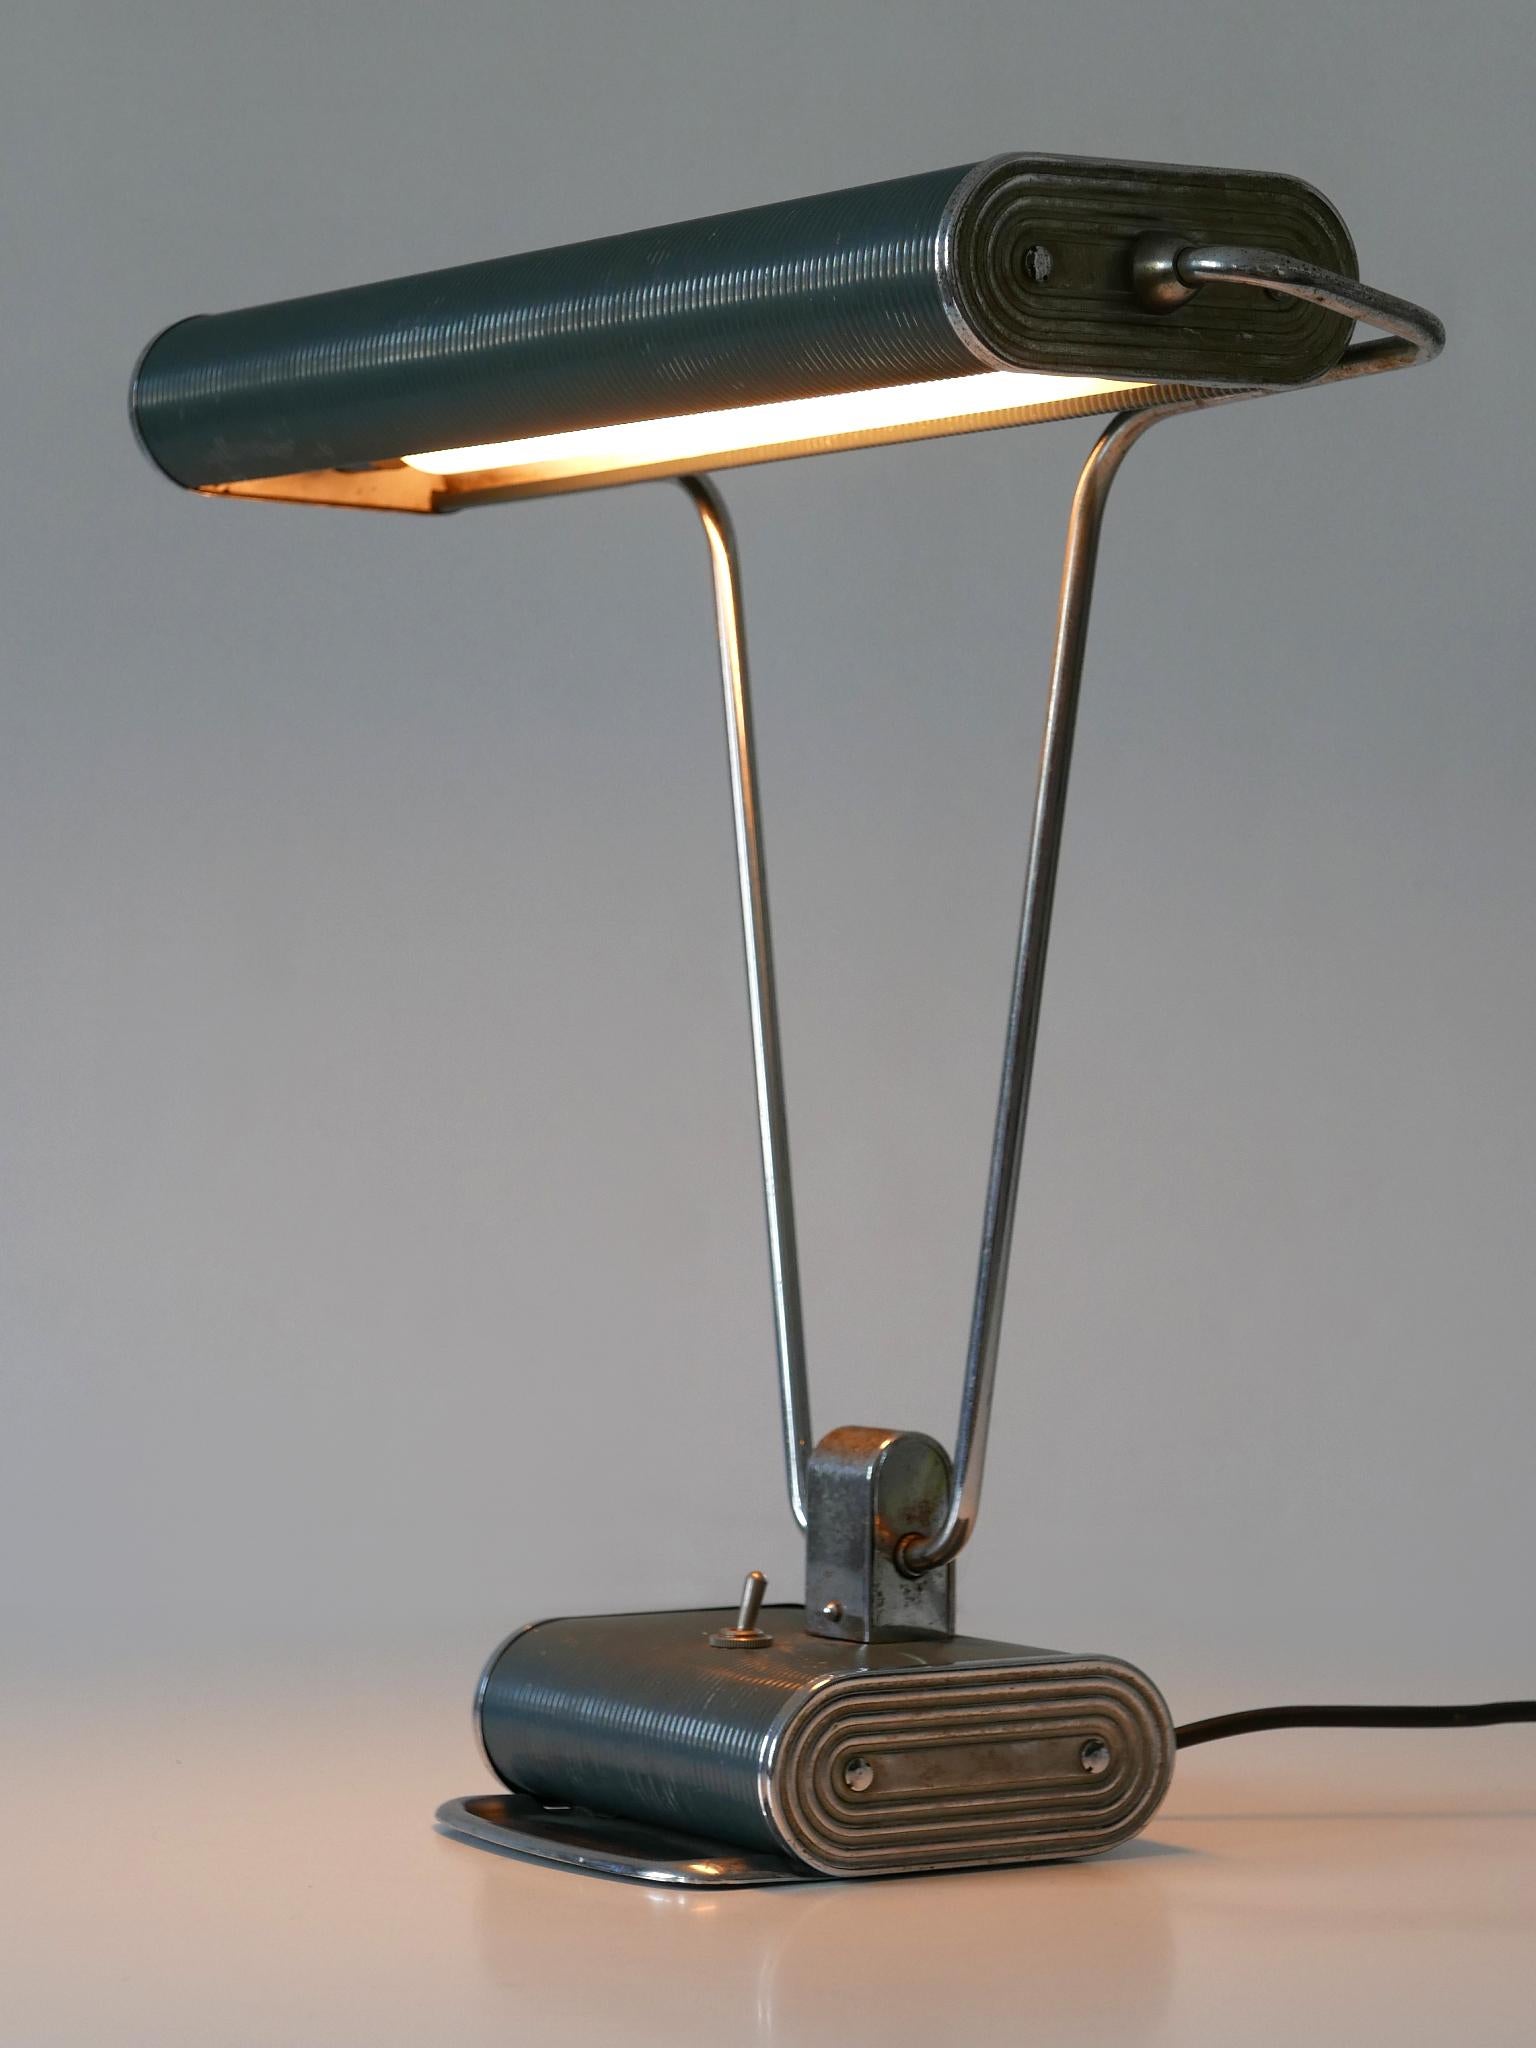 Elegante lampe de table ou de bureau Art Deco 'No 71' de couleur bleu-gris et argent. Abat-jour rotatif. Conçu par André Mounique pour Jumo, France, années 1930.

Un total de 5 lampes en deux couleurs est disponible !
Il s'agit du numéro 4 des cinq